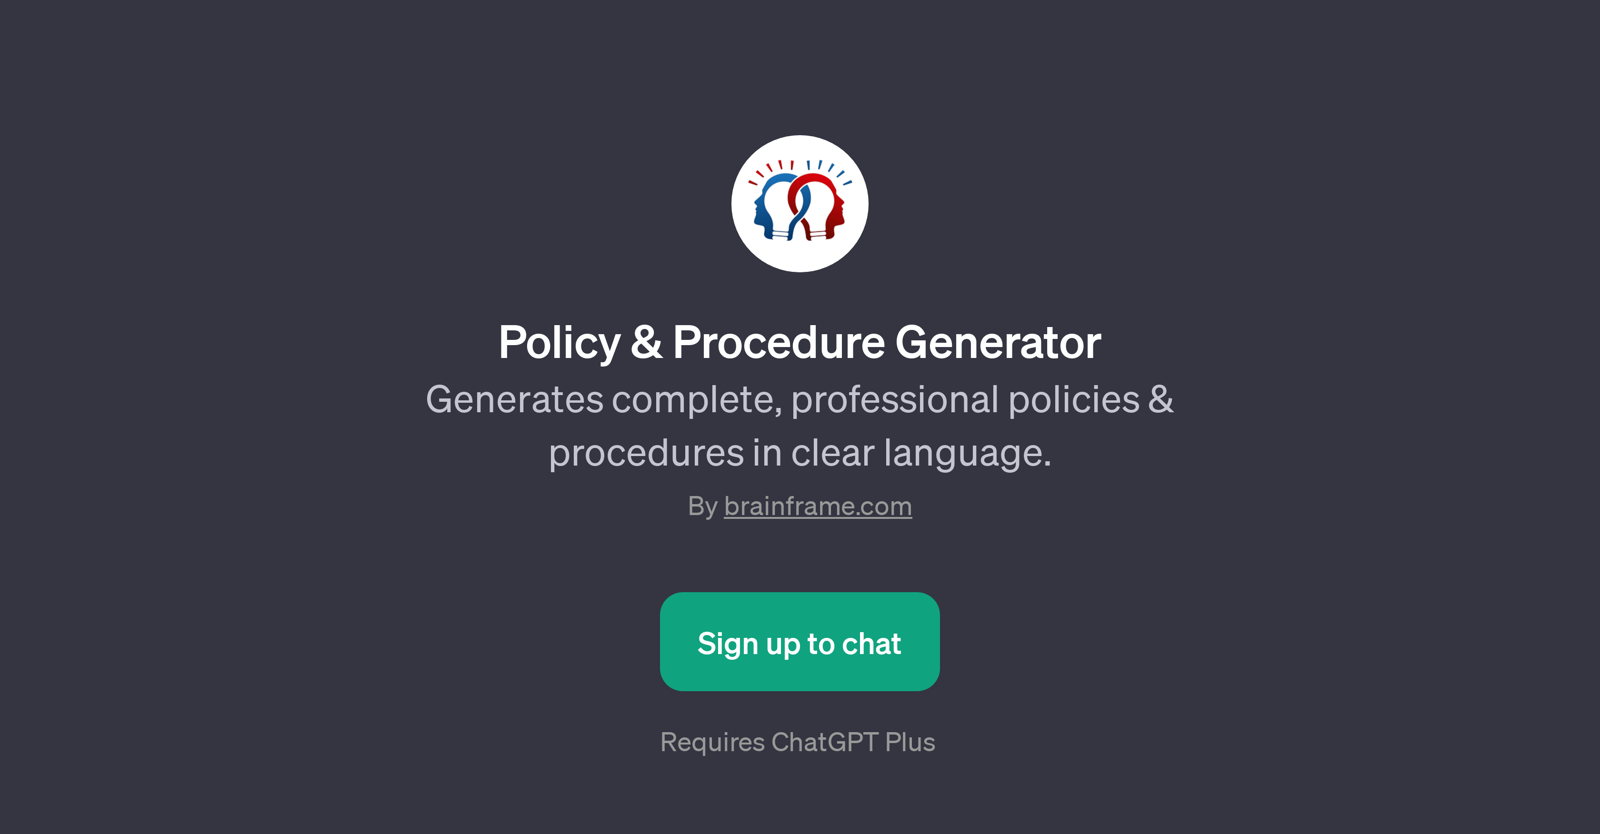 Policy & Procedure Generator website